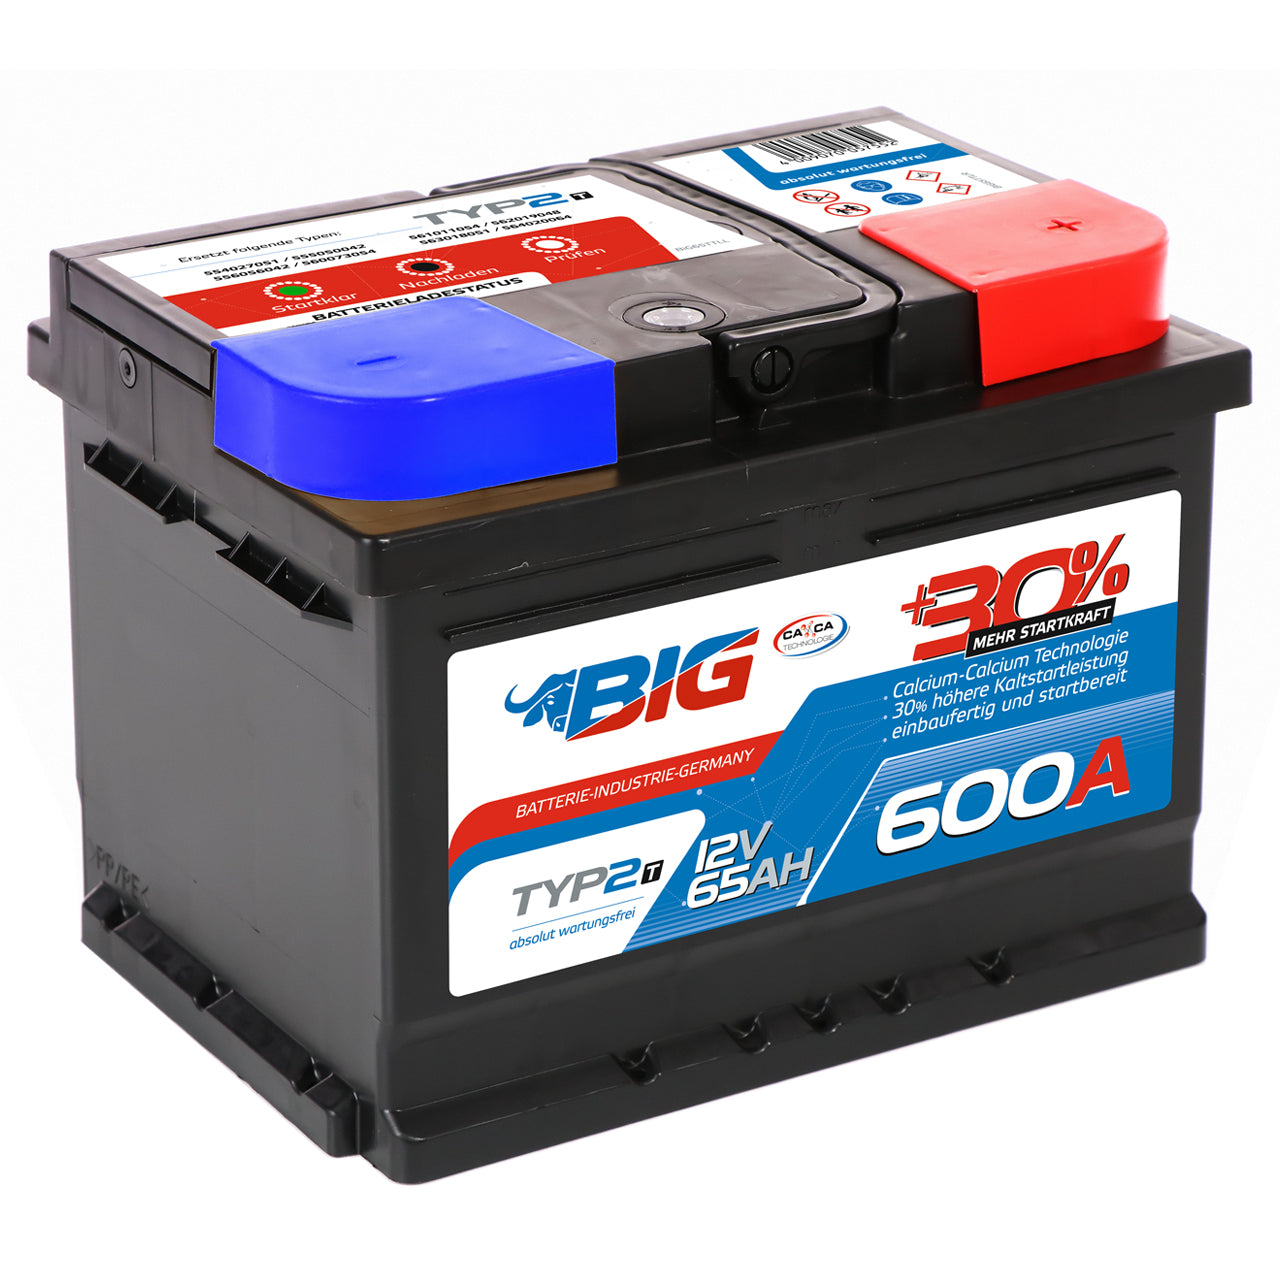 BIG +30% T-Modell 12V 65Ah 600A/EN Autobatterie